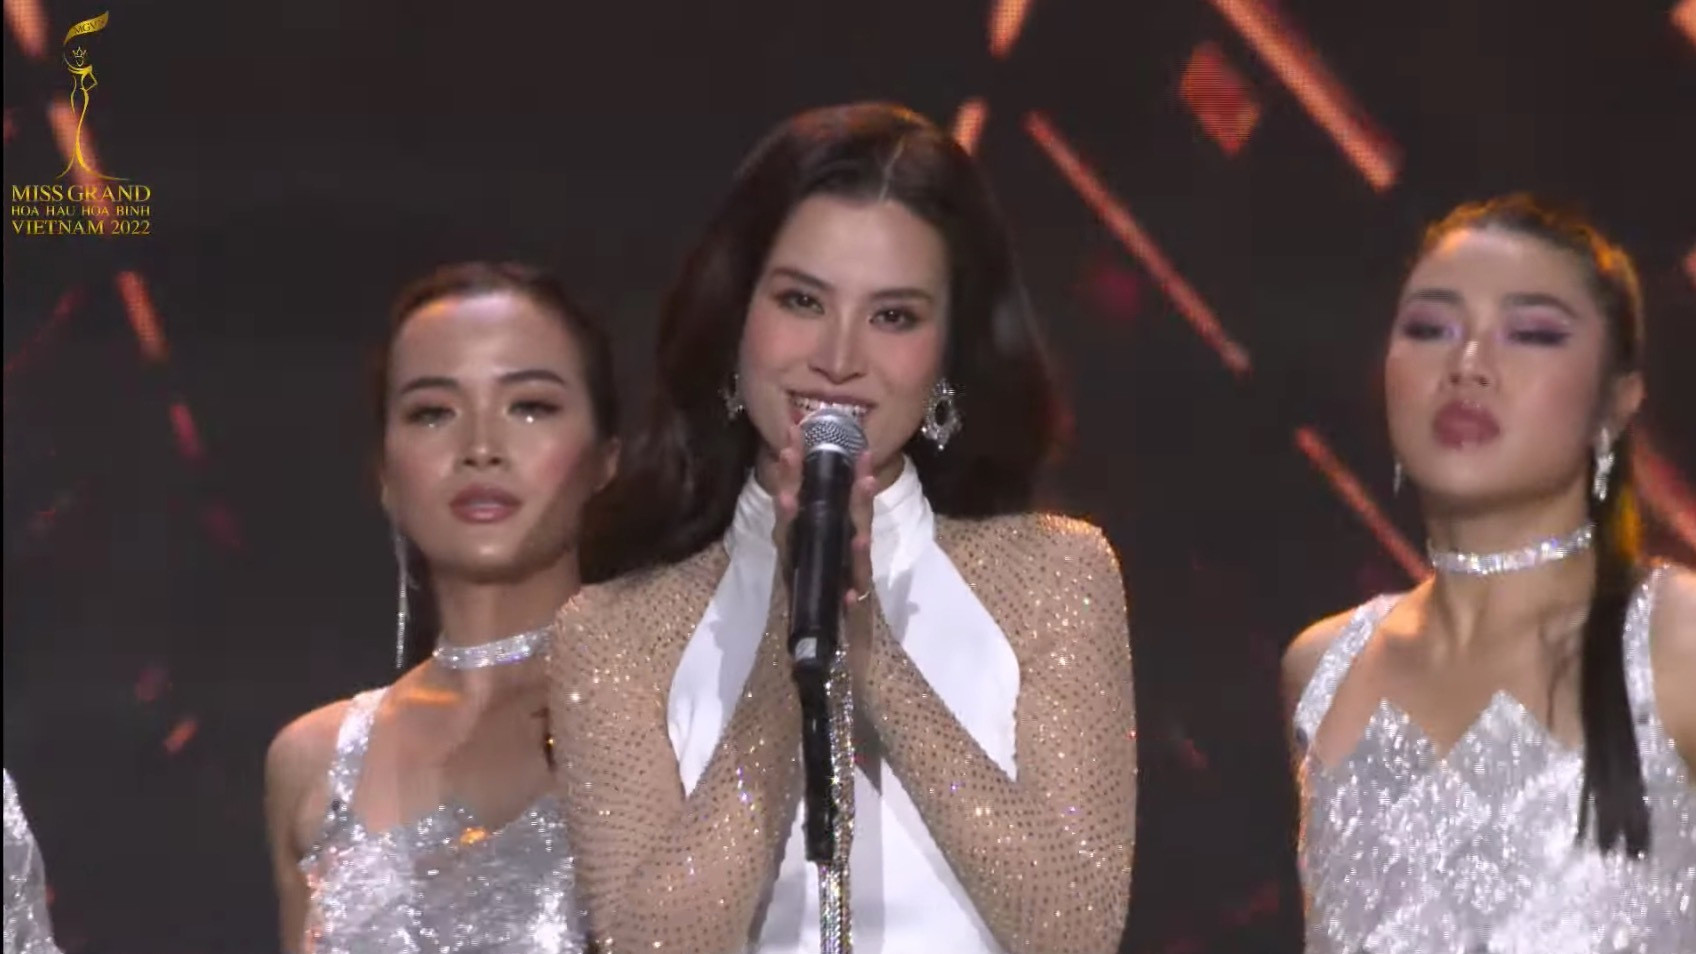 Đoàn Thiên Ân đăng quang Miss Grand Vietnam - Hoa hậu Hòa bình Việt Nam 2022 - 2